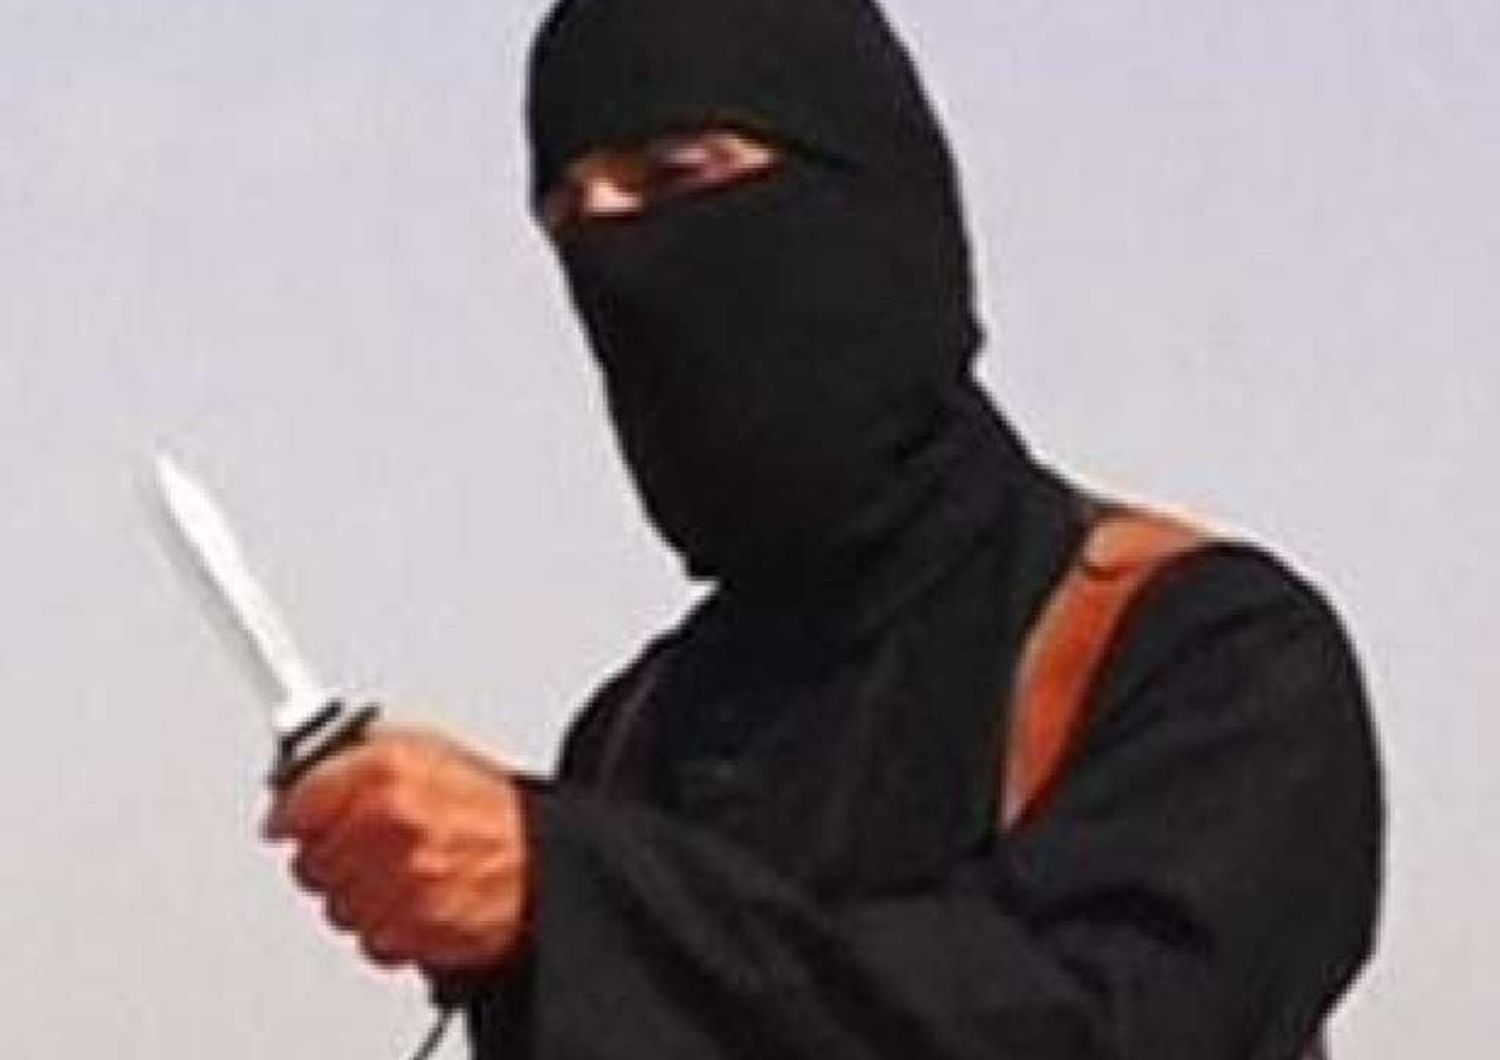 Isis diffonde video reporter inglese, "L'Occidente sbaglia" - Video